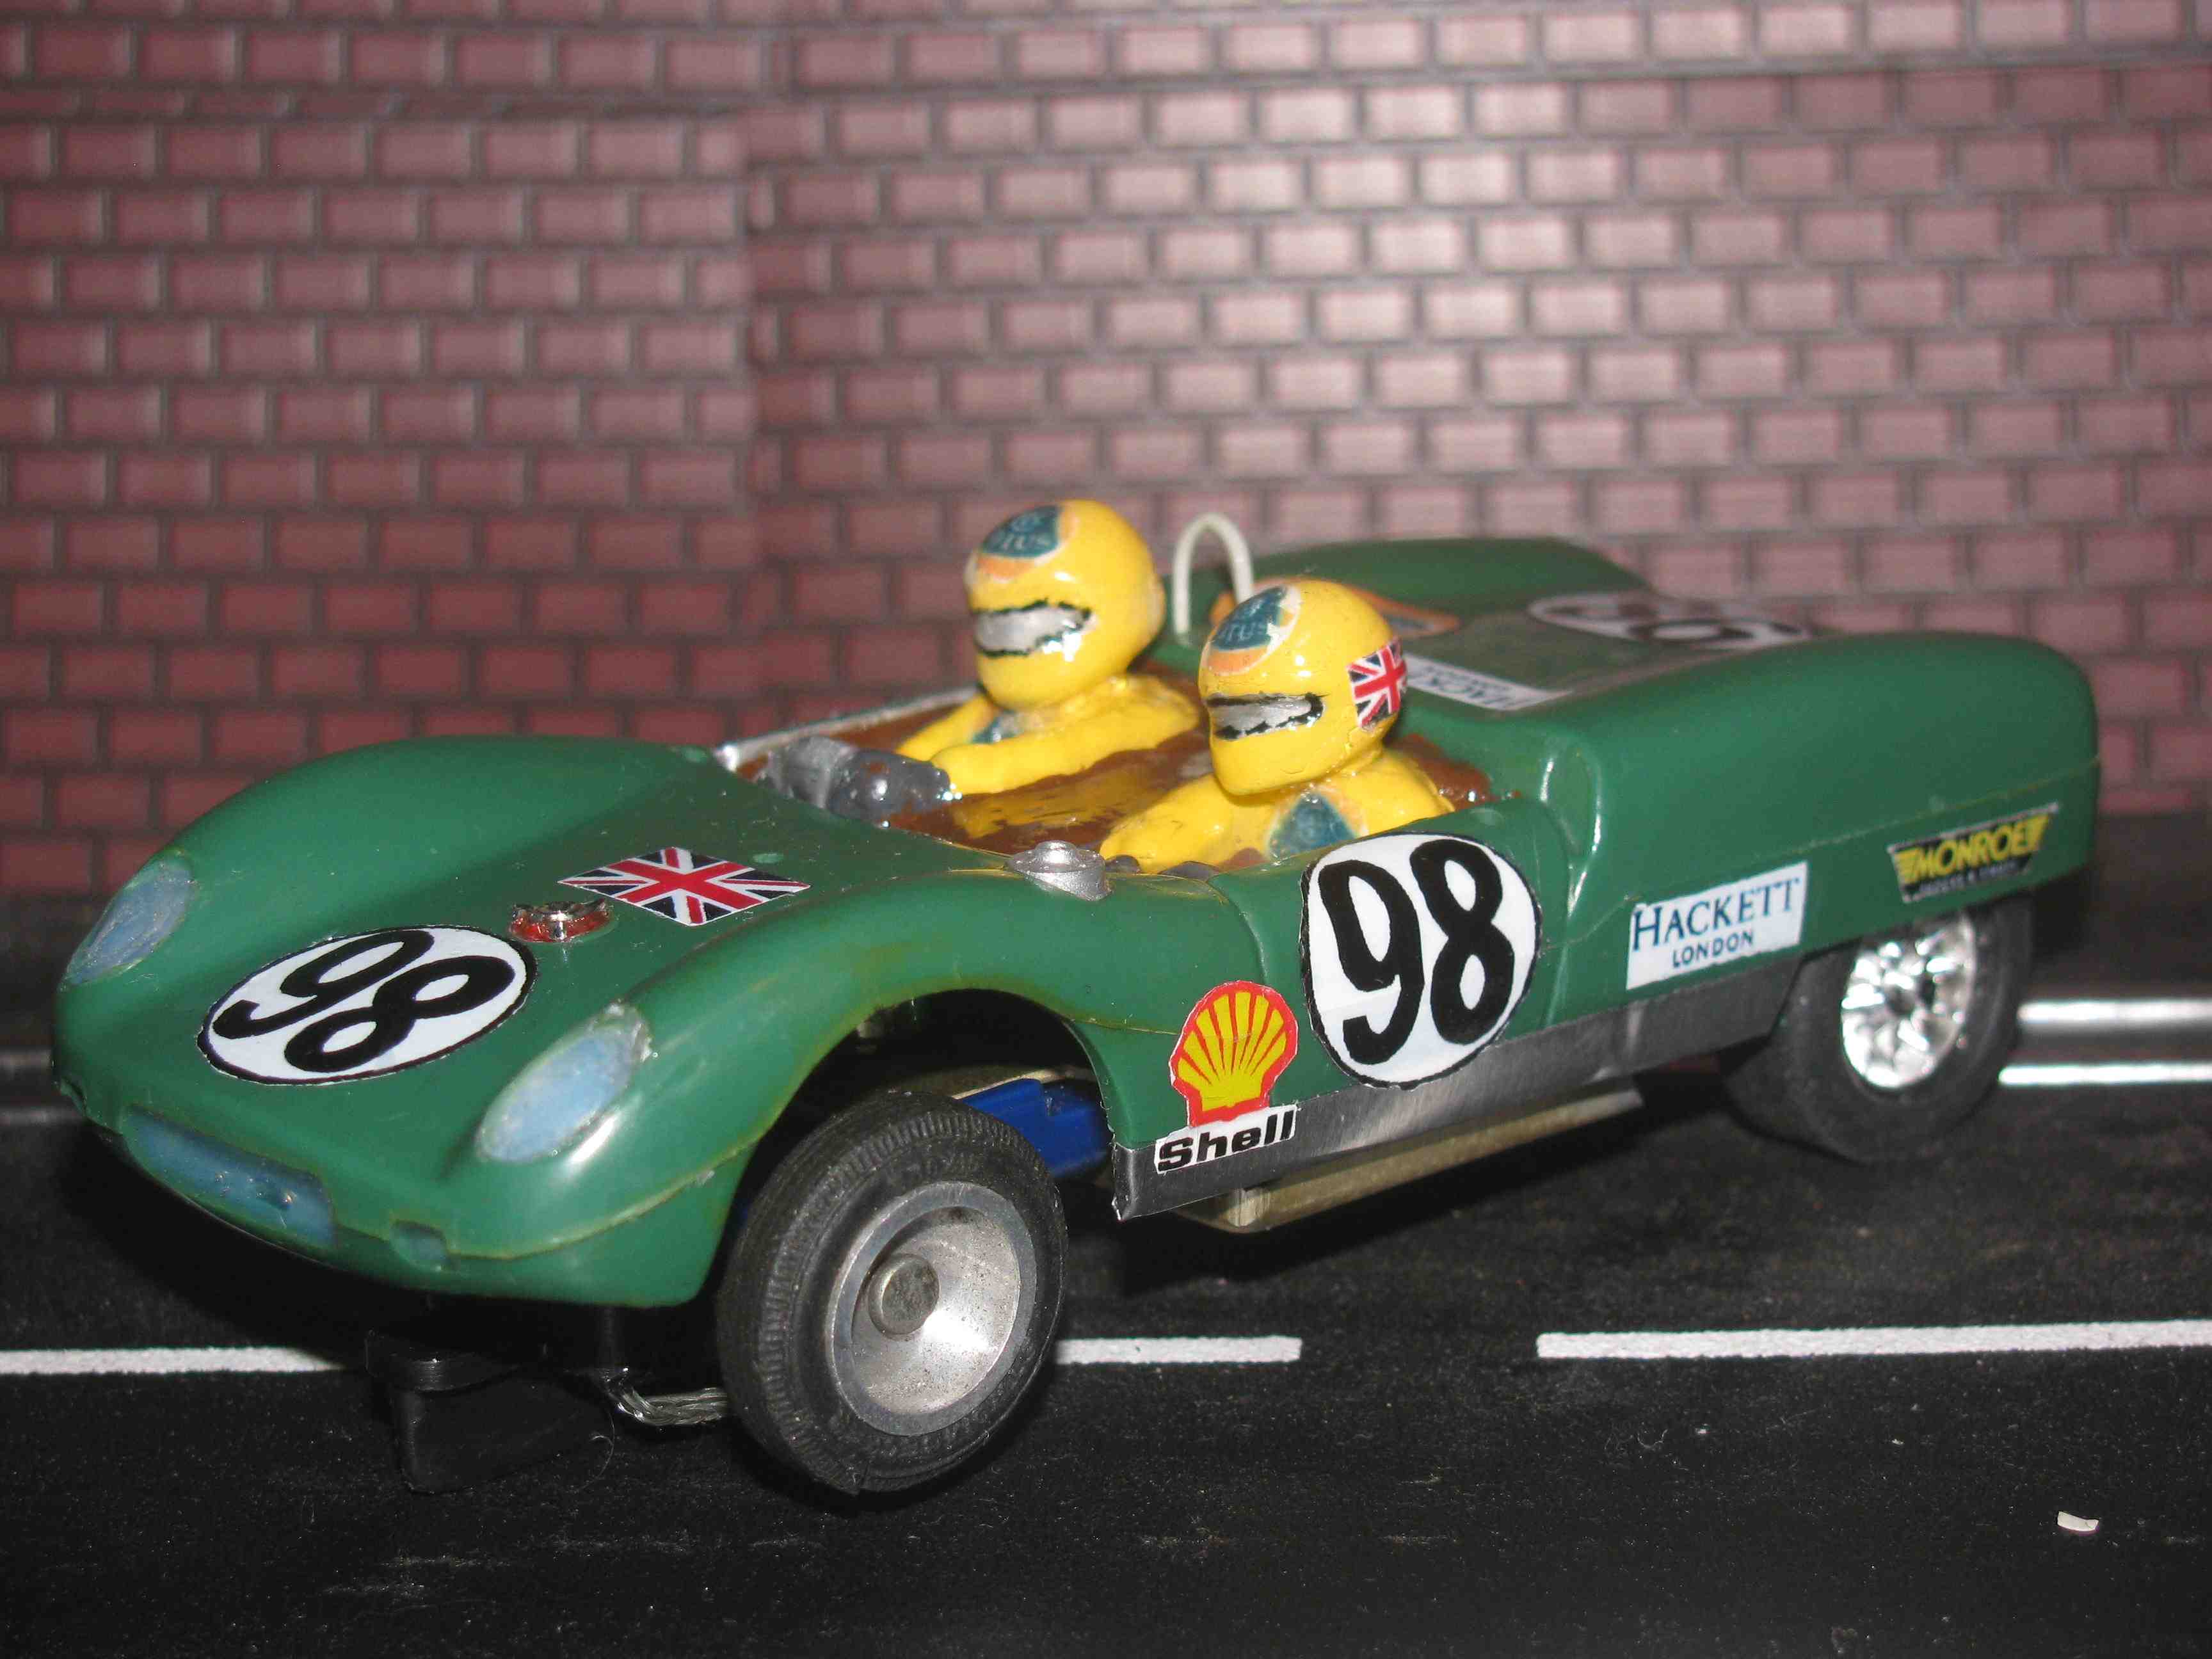 *** SOLD *** Strombecker 1963 Lotus MK XIX Slot Car – Green - Car #98